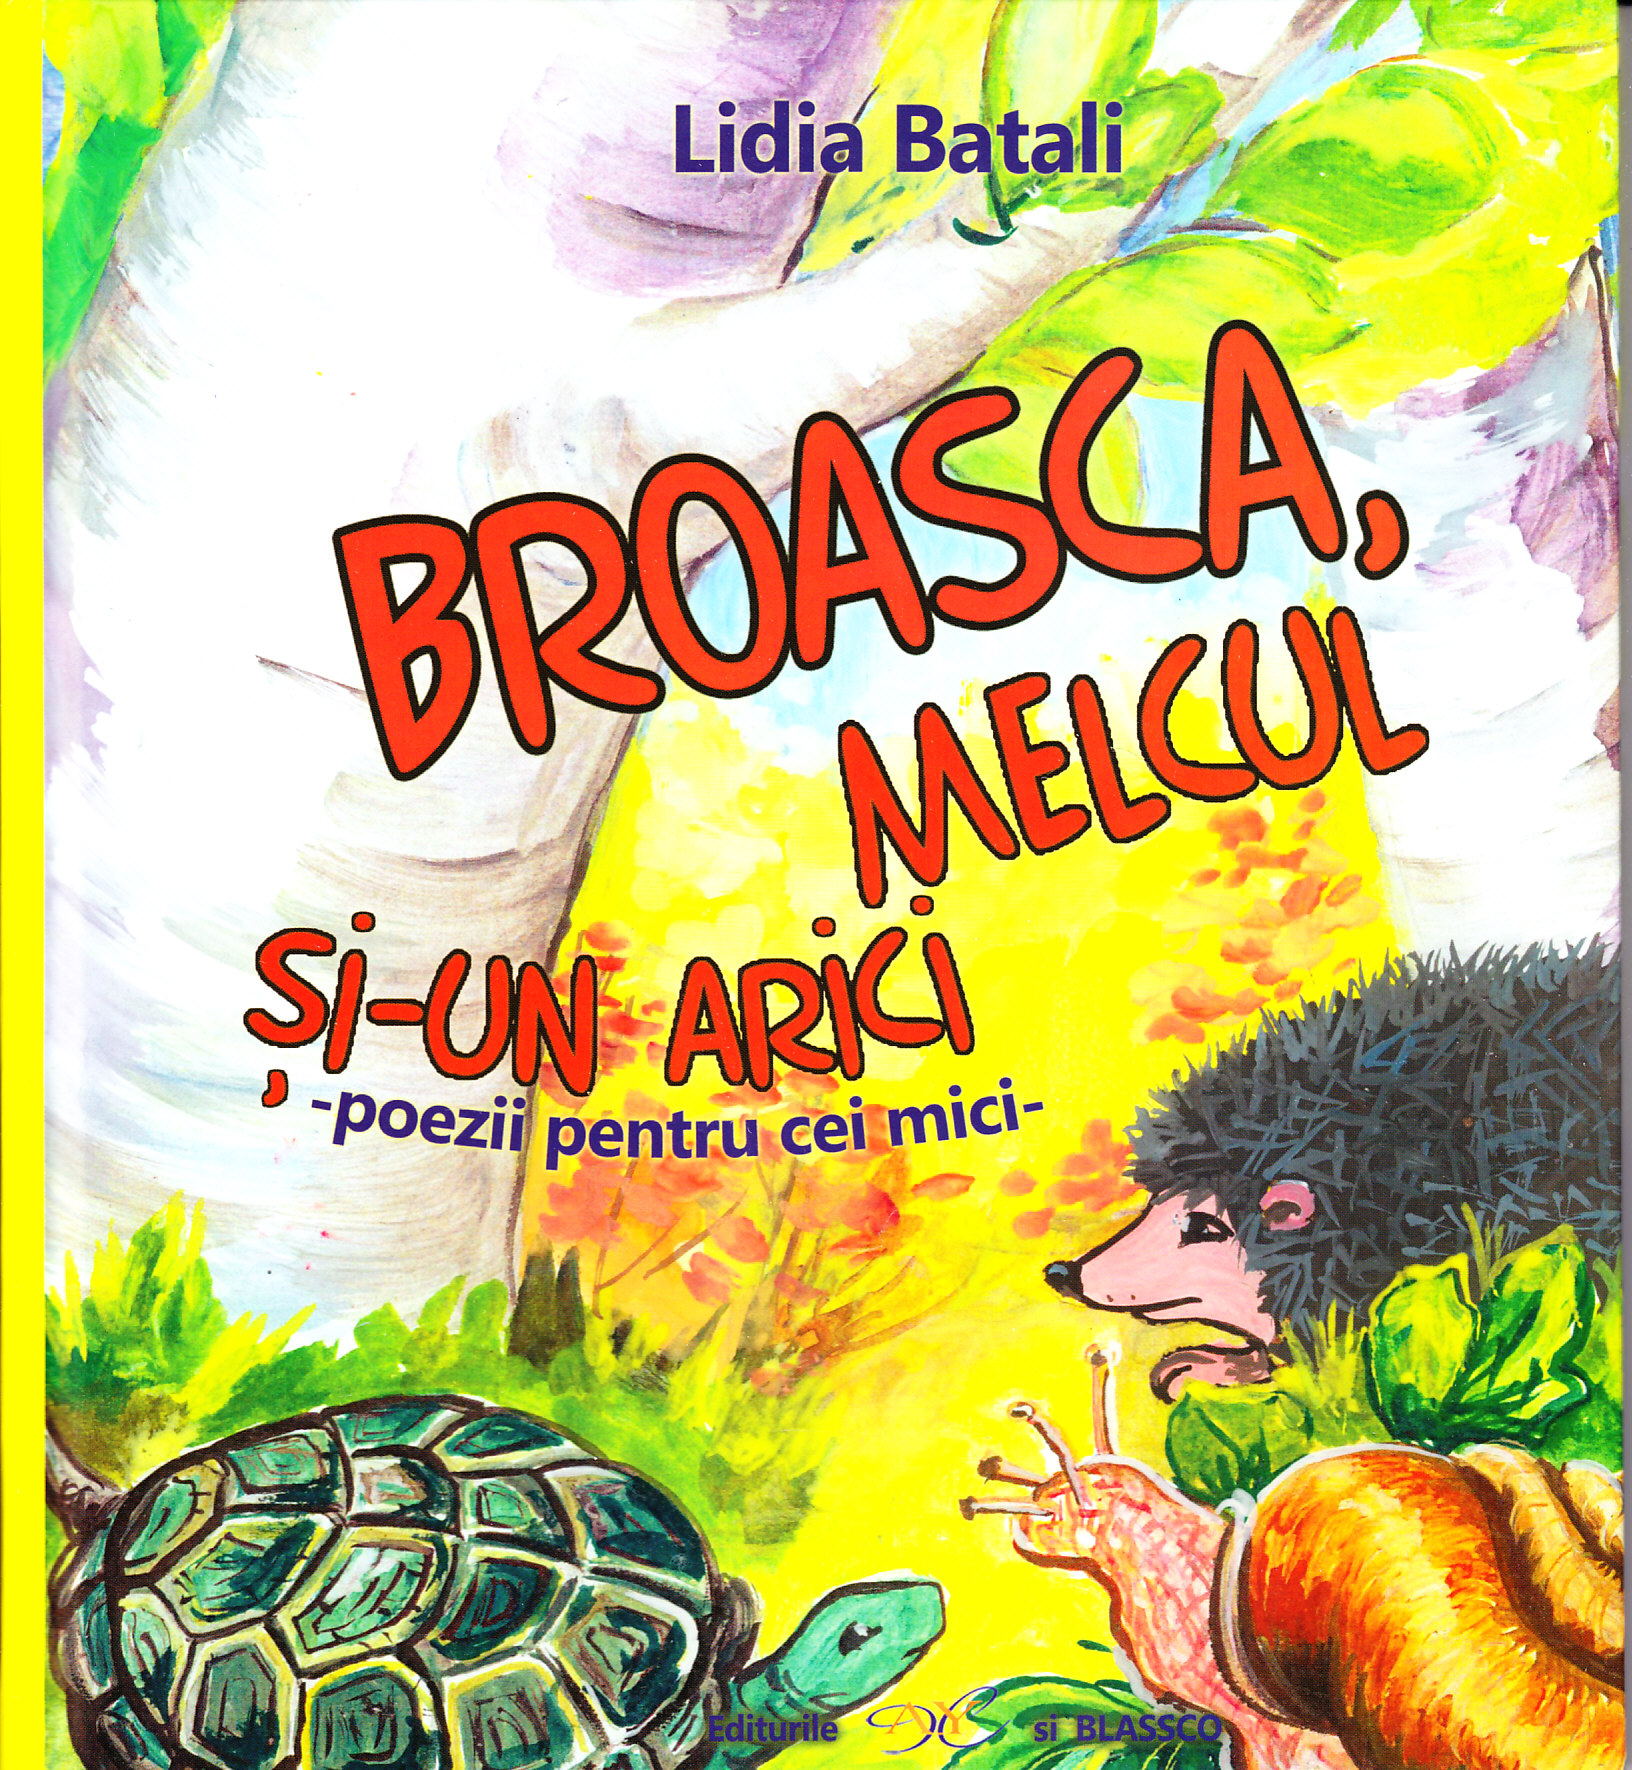 Broasca, melcul si-un arici - Lidia Batali